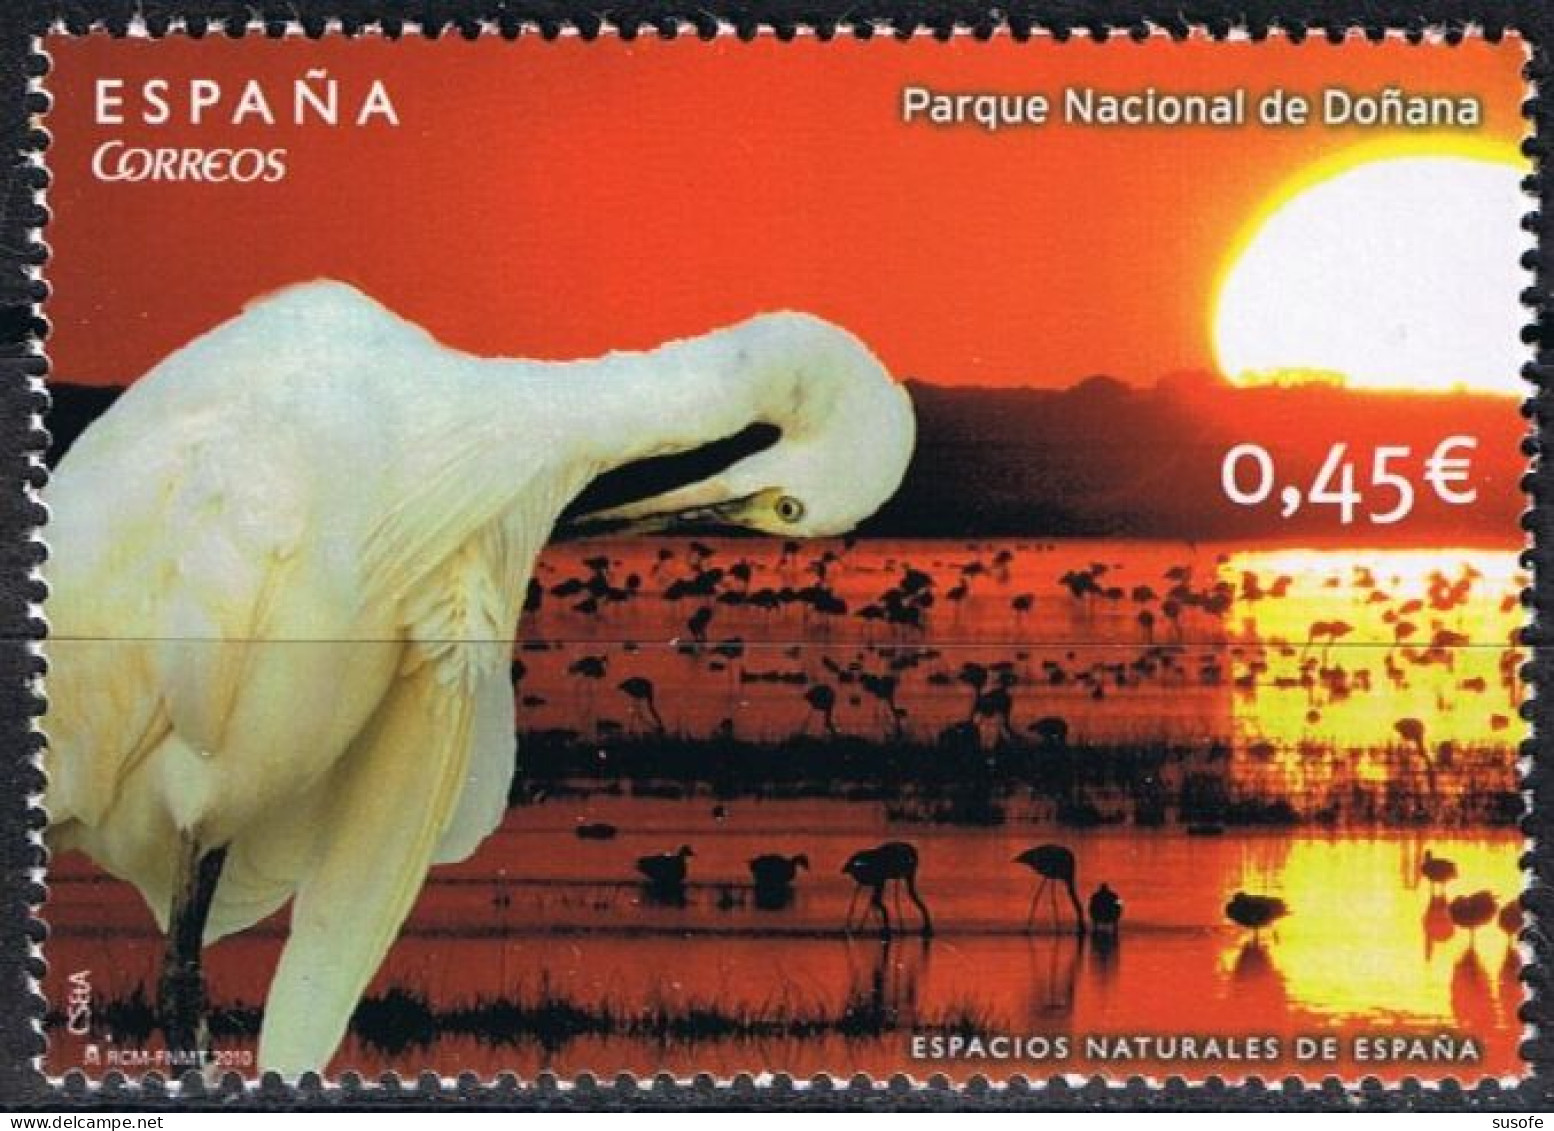 España 2010 Edifil 4568 Sello ** Espacios Naturales Parque Nacional De Doñana Huelva Garza (Ardea Alba) Patrimonio Mundi - Ongebruikt